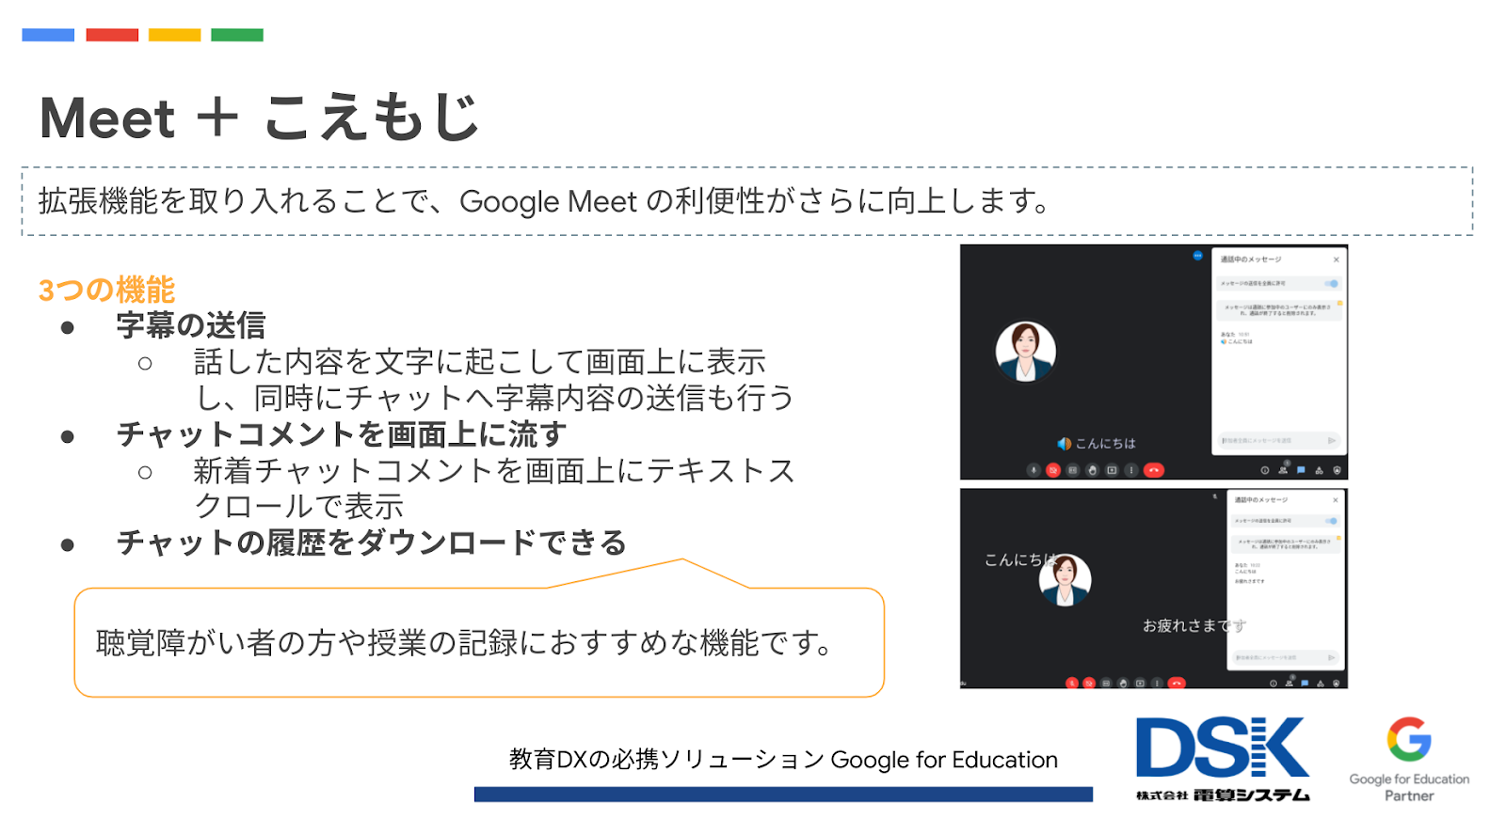 【イベントレポート】Google Meet で豊かなオンライン授業を-2